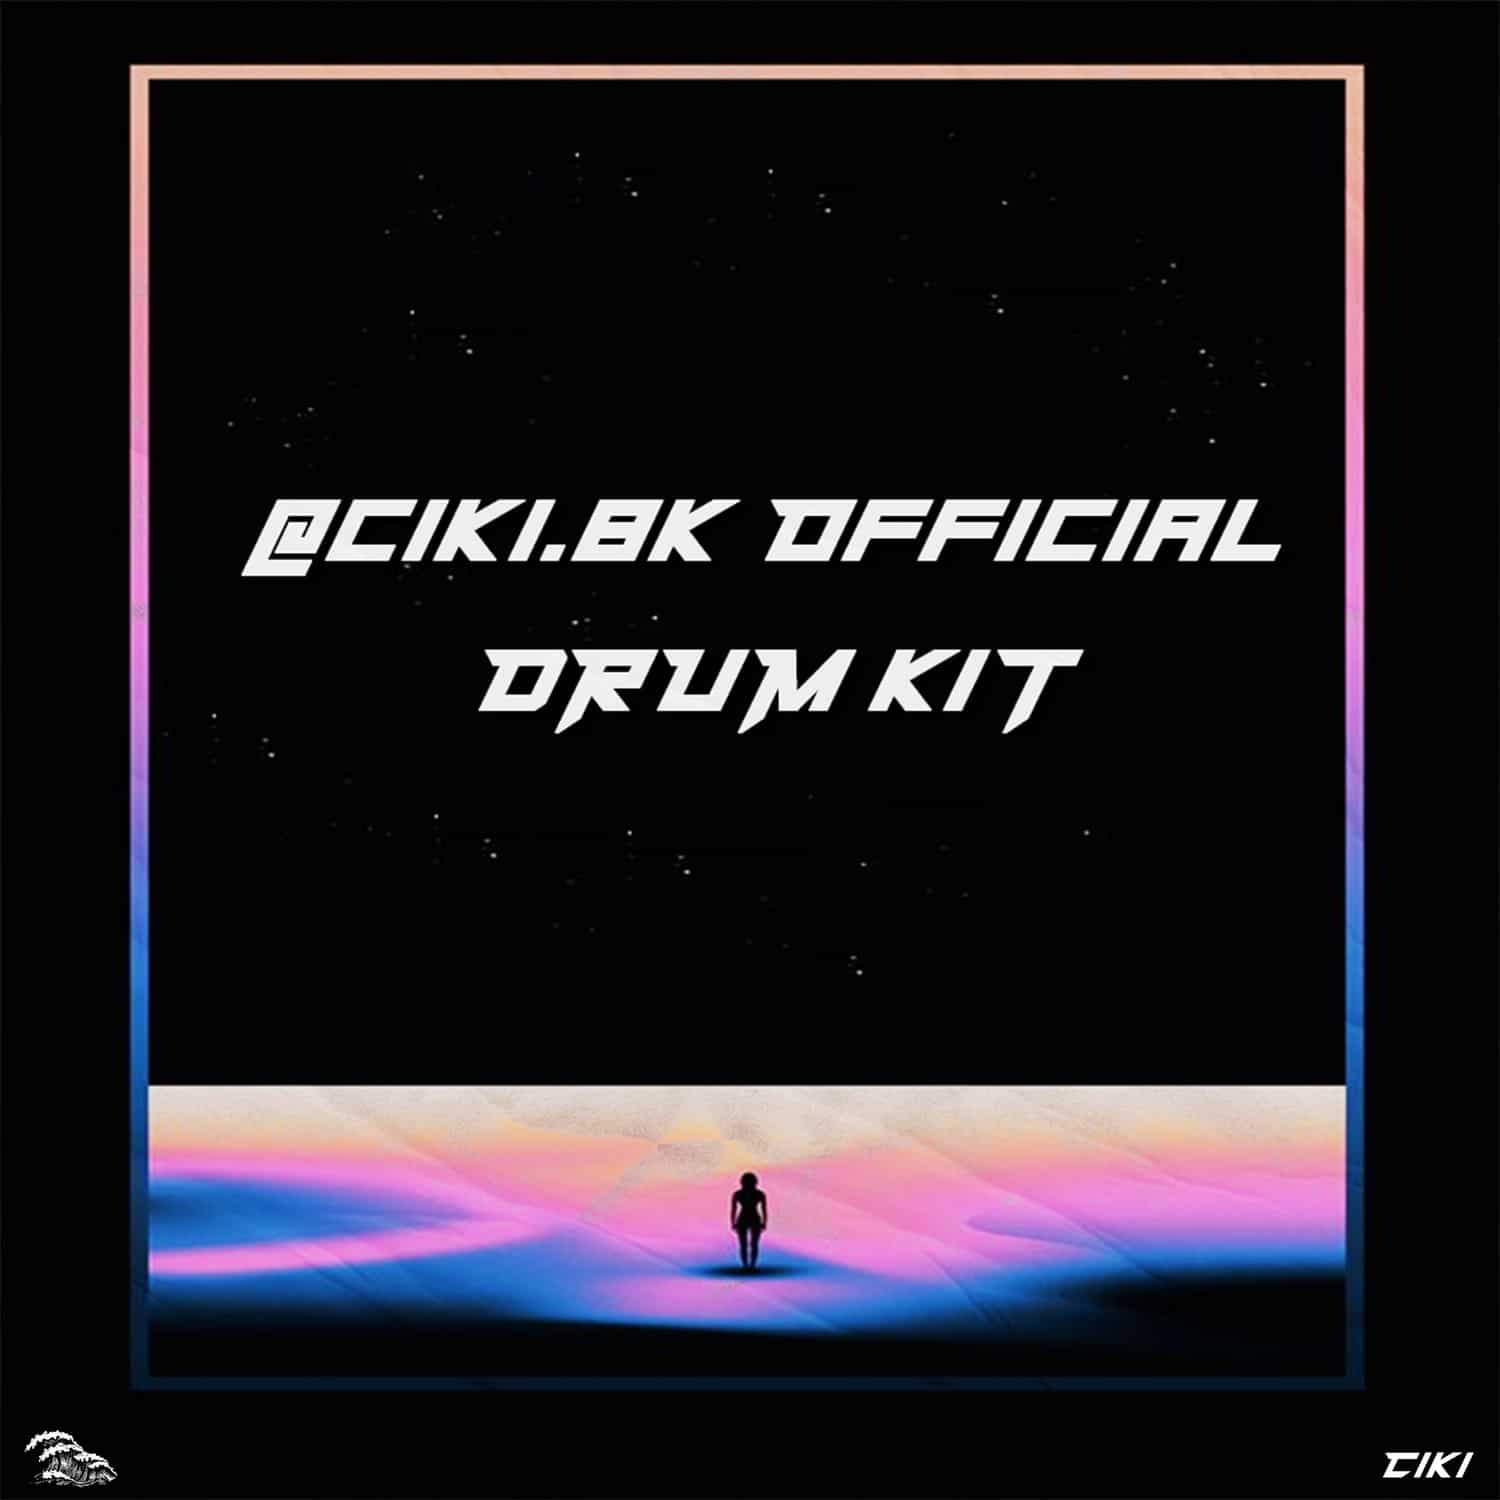 ciki.8k - Official Drum Kit